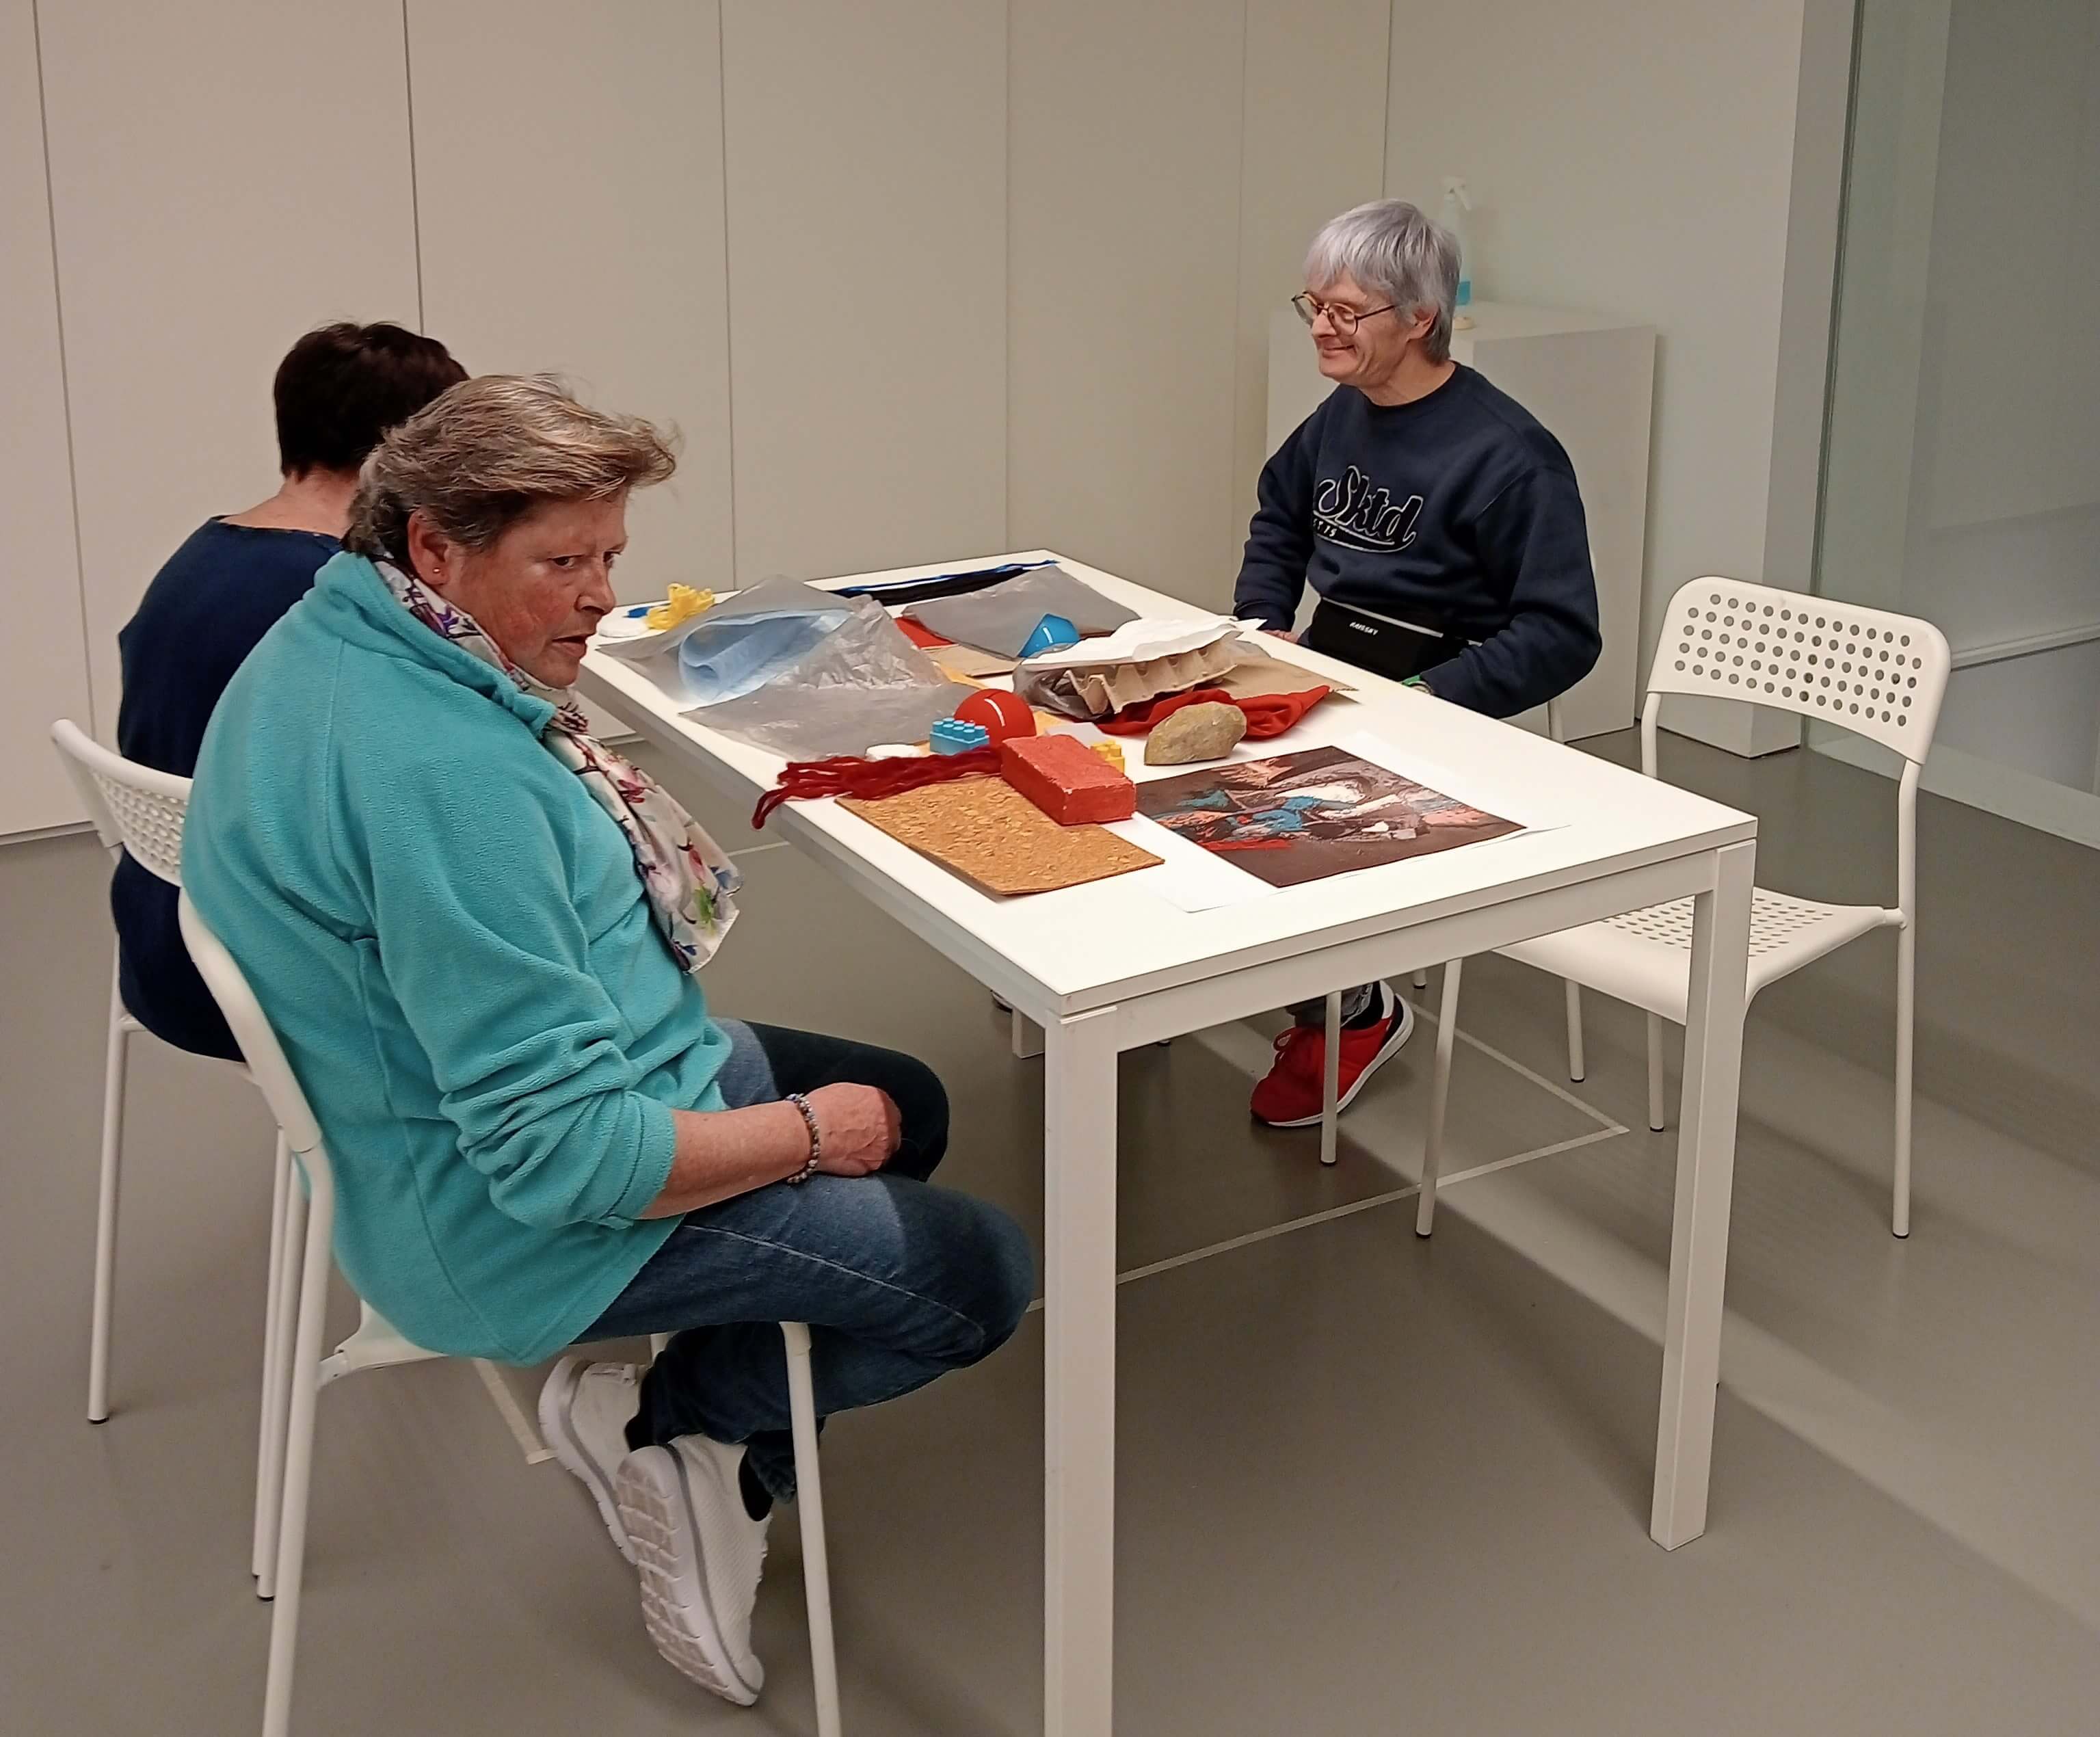  Participamos en un taller práctico sobre la exposición Ciria. Pintura, memoria y tiempo